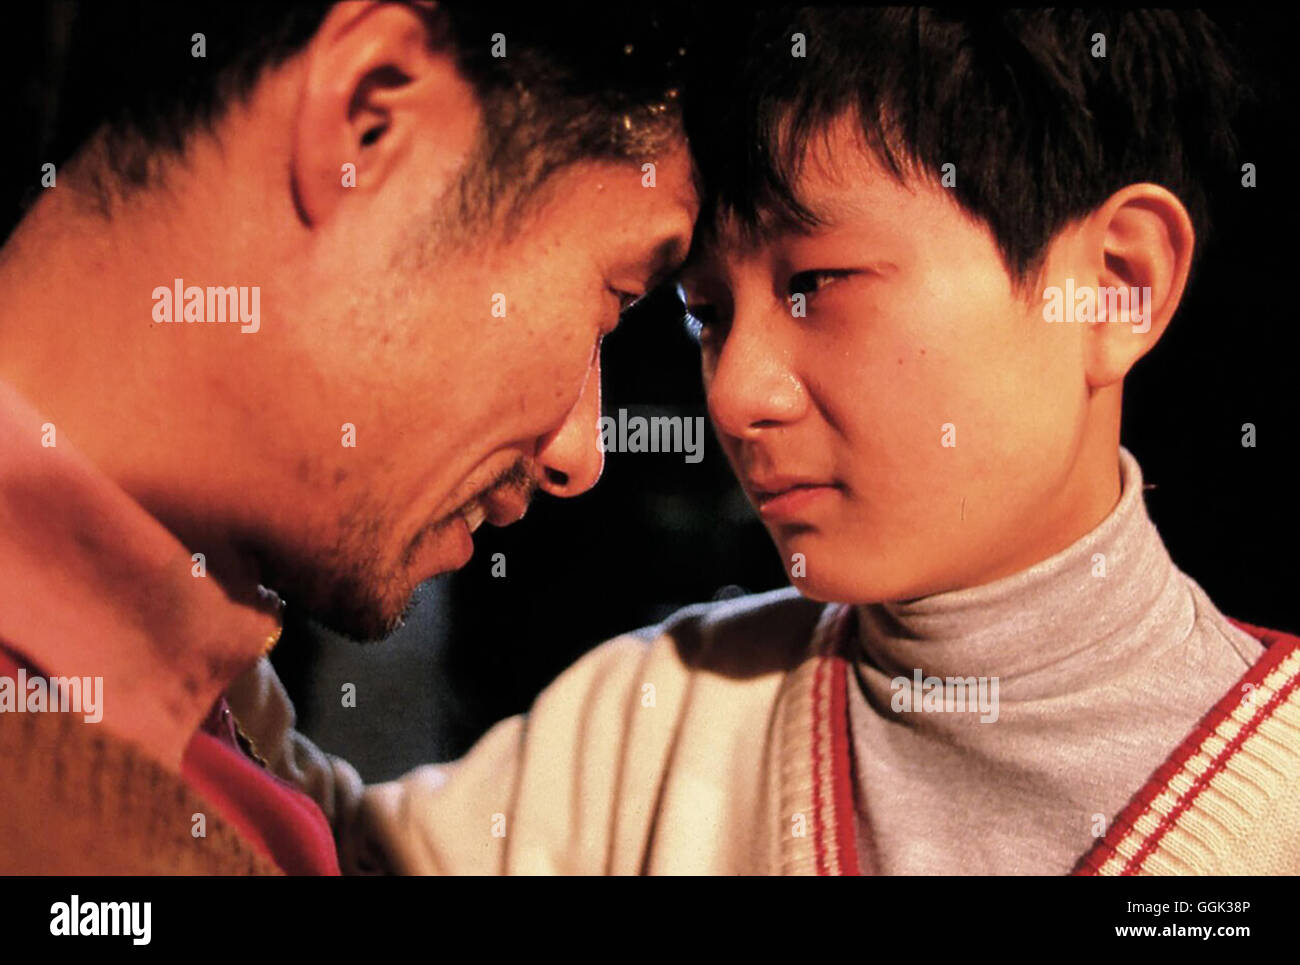 XIAOS WEG / Together / Han ni zai yiki CHN 2002 / Chen Kaige Szene mit Liu Cheng (LIU PEIQI) und Xiao Chun (TANG YUN) Regie: Chen Kaige aka. Together / Han ni zai yiki Stock Photo